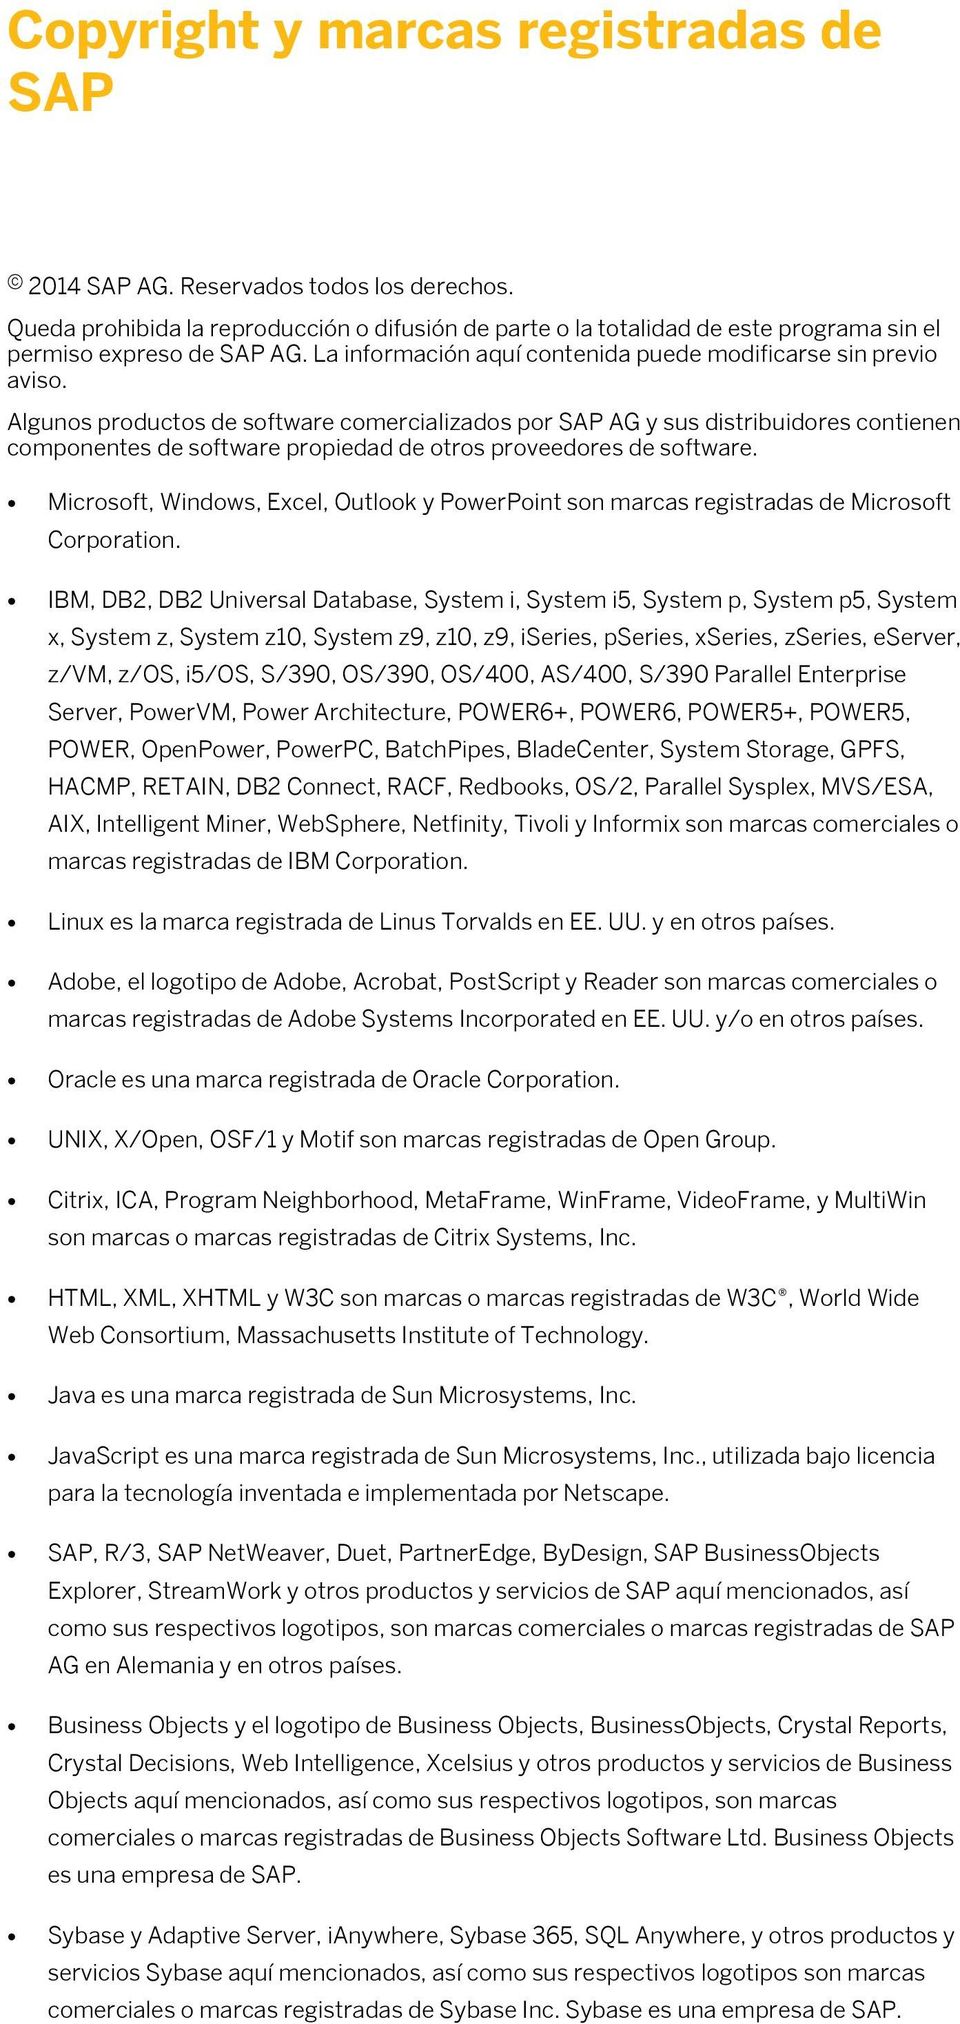 Algunos productos de software comercializados por SAP AG y sus distribuidores contienen componentes de software propiedad de otros proveedores de software.